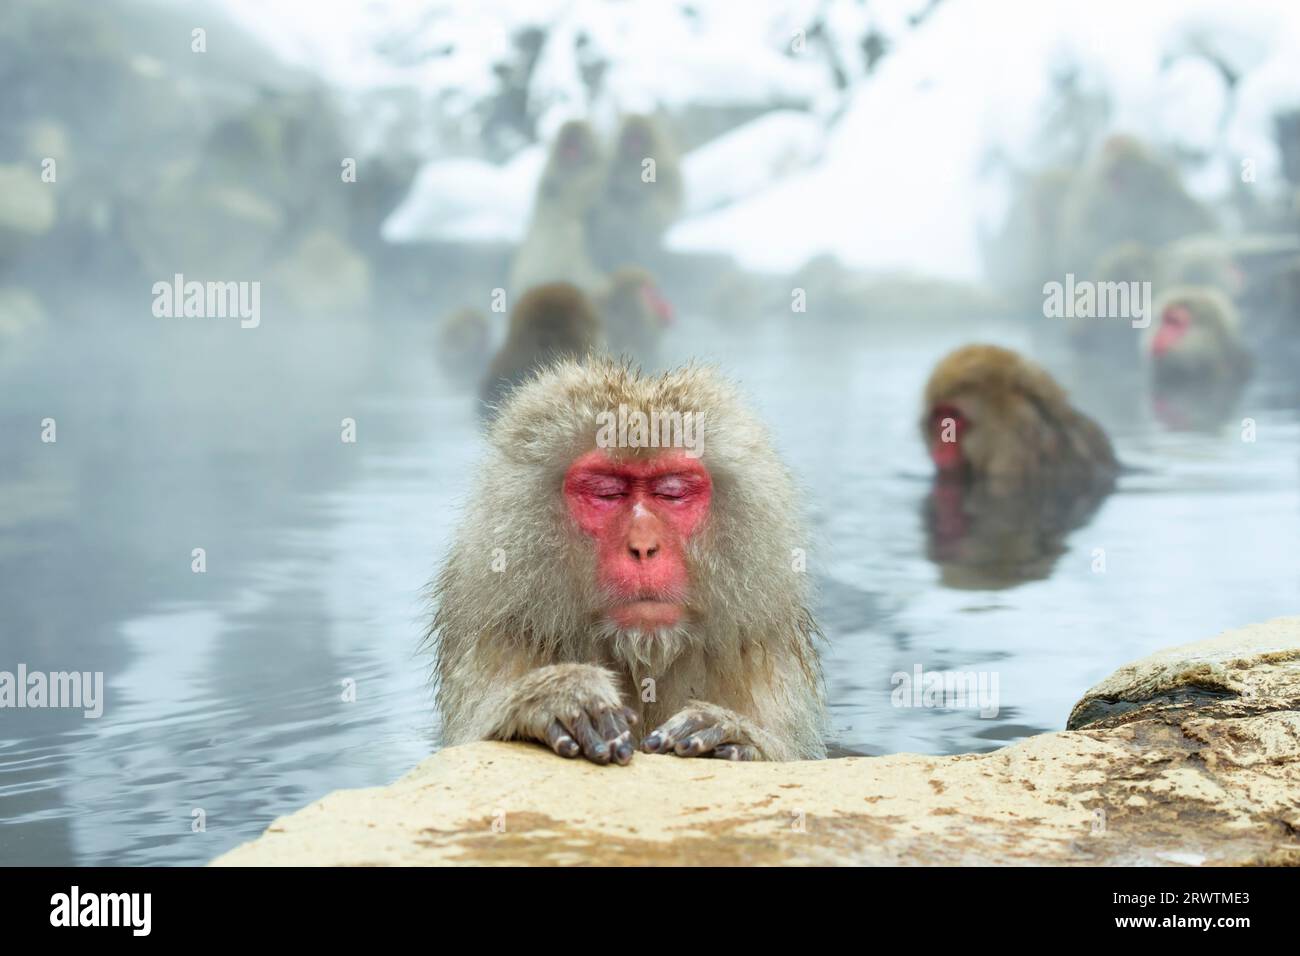 Une femelle macaque japonaise prenant un bain relaxant dans une source chaude Banque D'Images